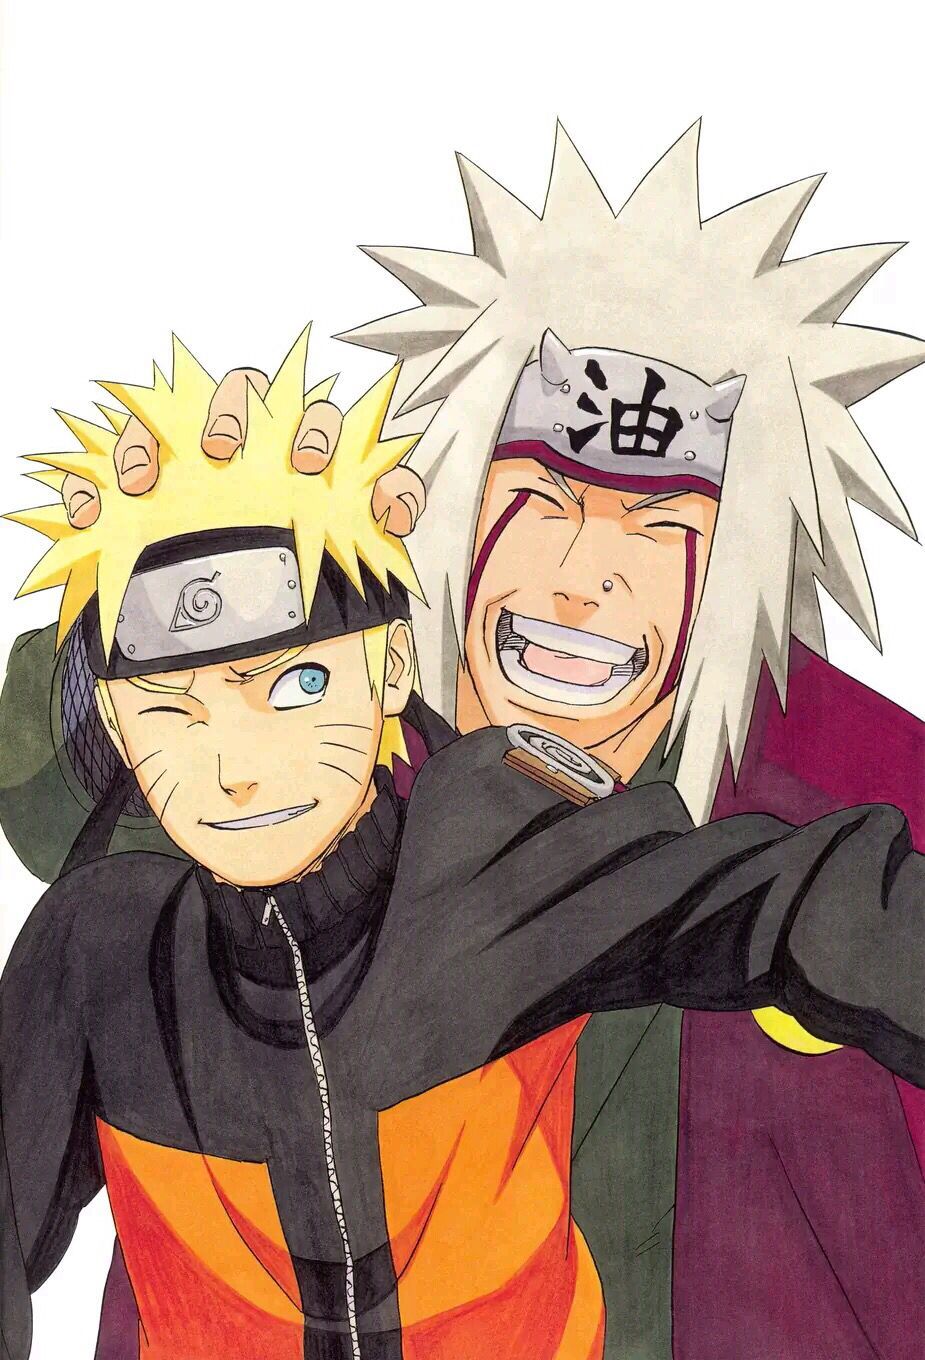 Master Jiraiya and Naruto. Personnages naruto, Image de naruto, Naruto